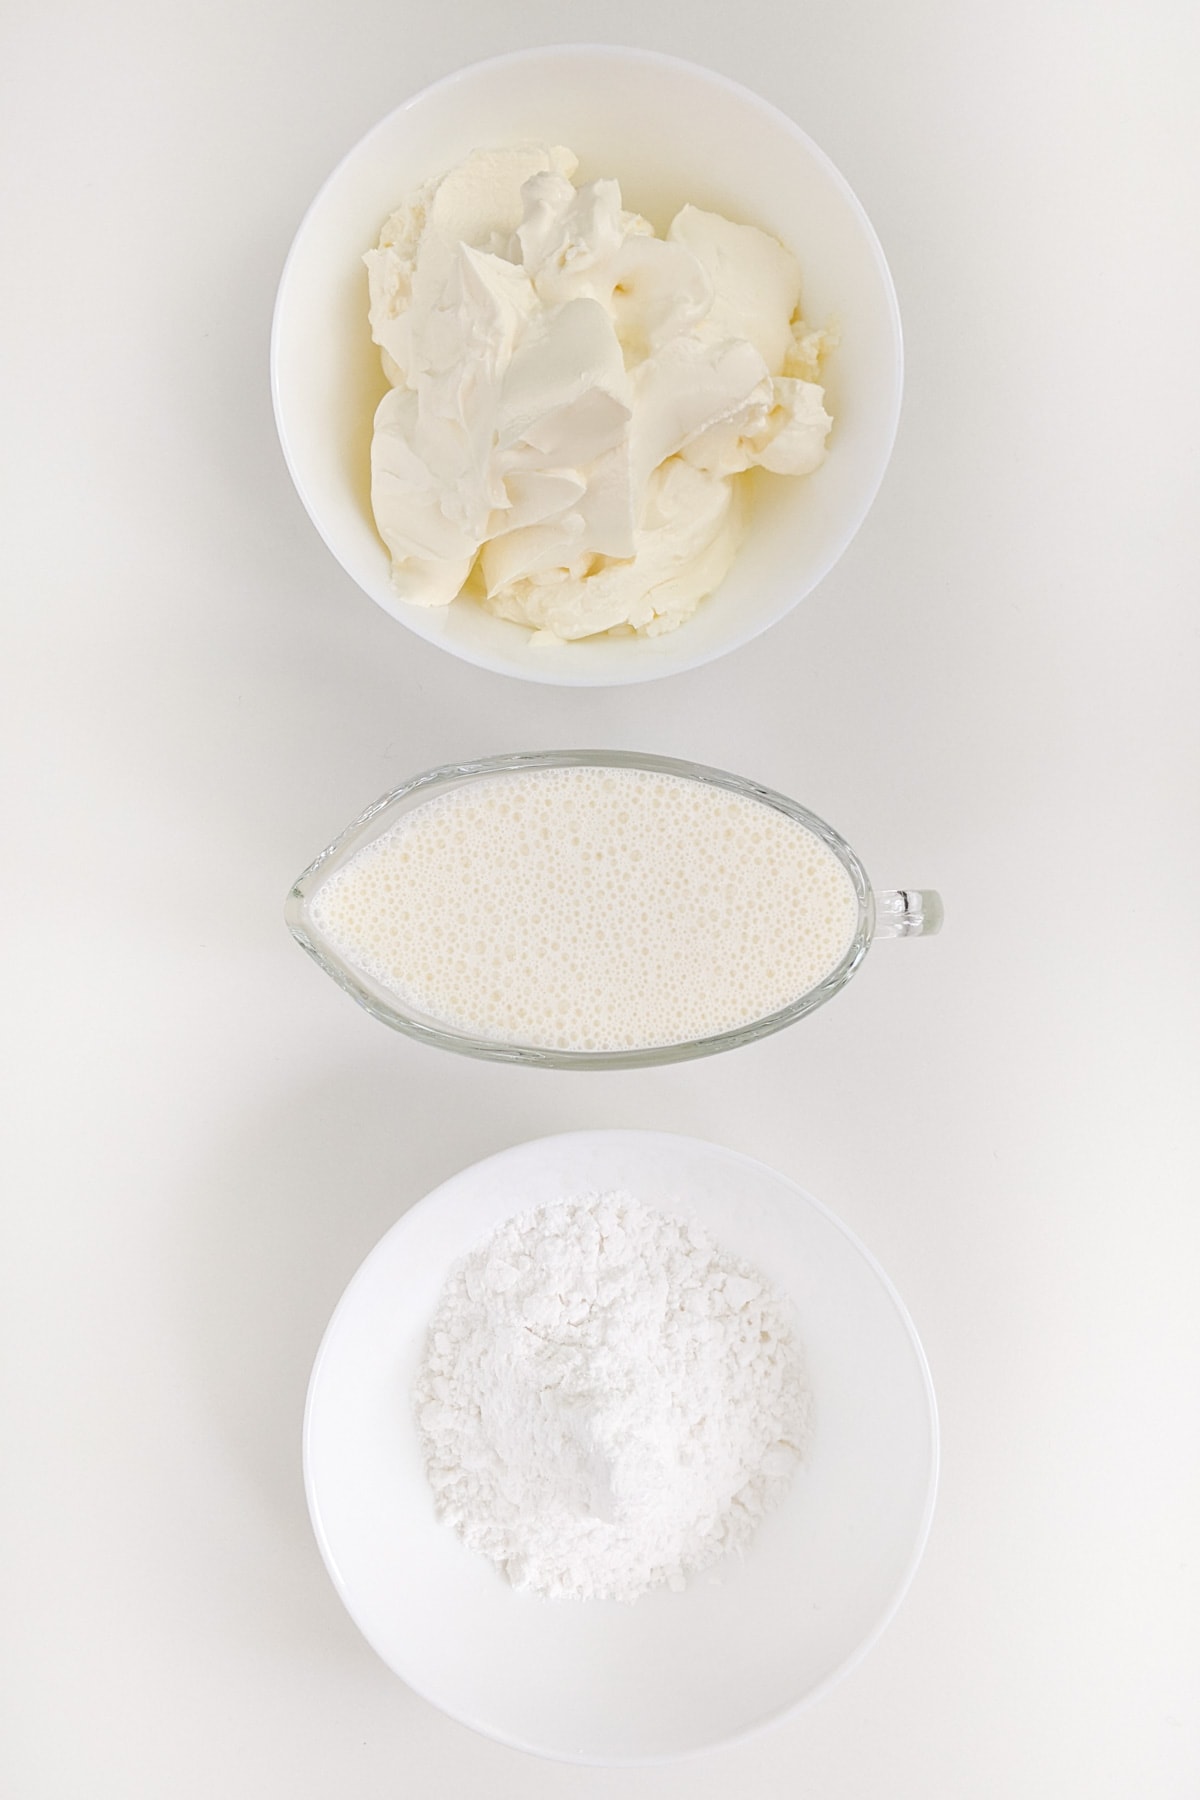 Cream cheese, near flour and cream on a white table.